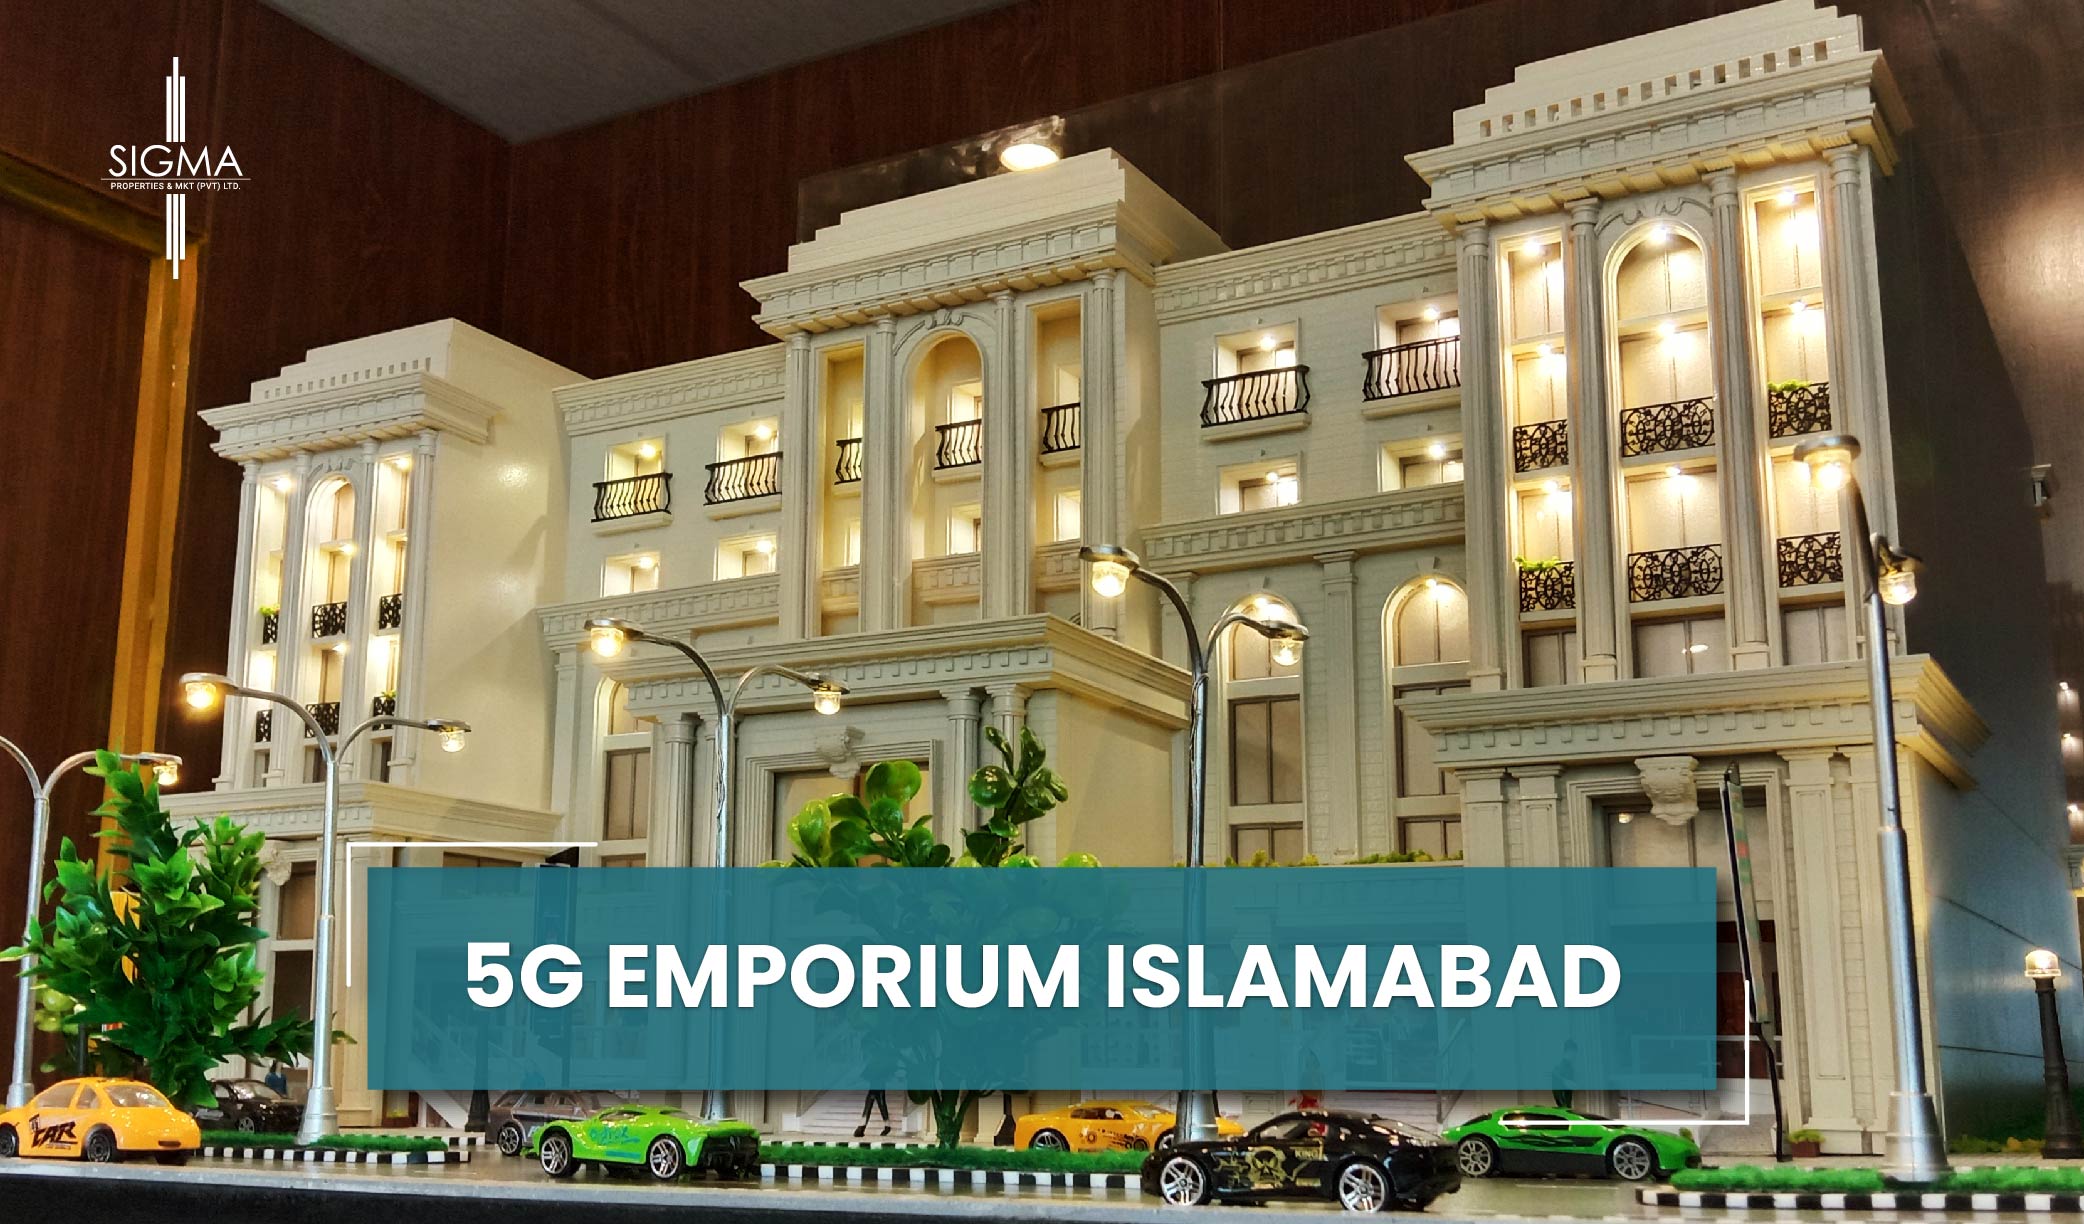 5G Emporium Islamabad